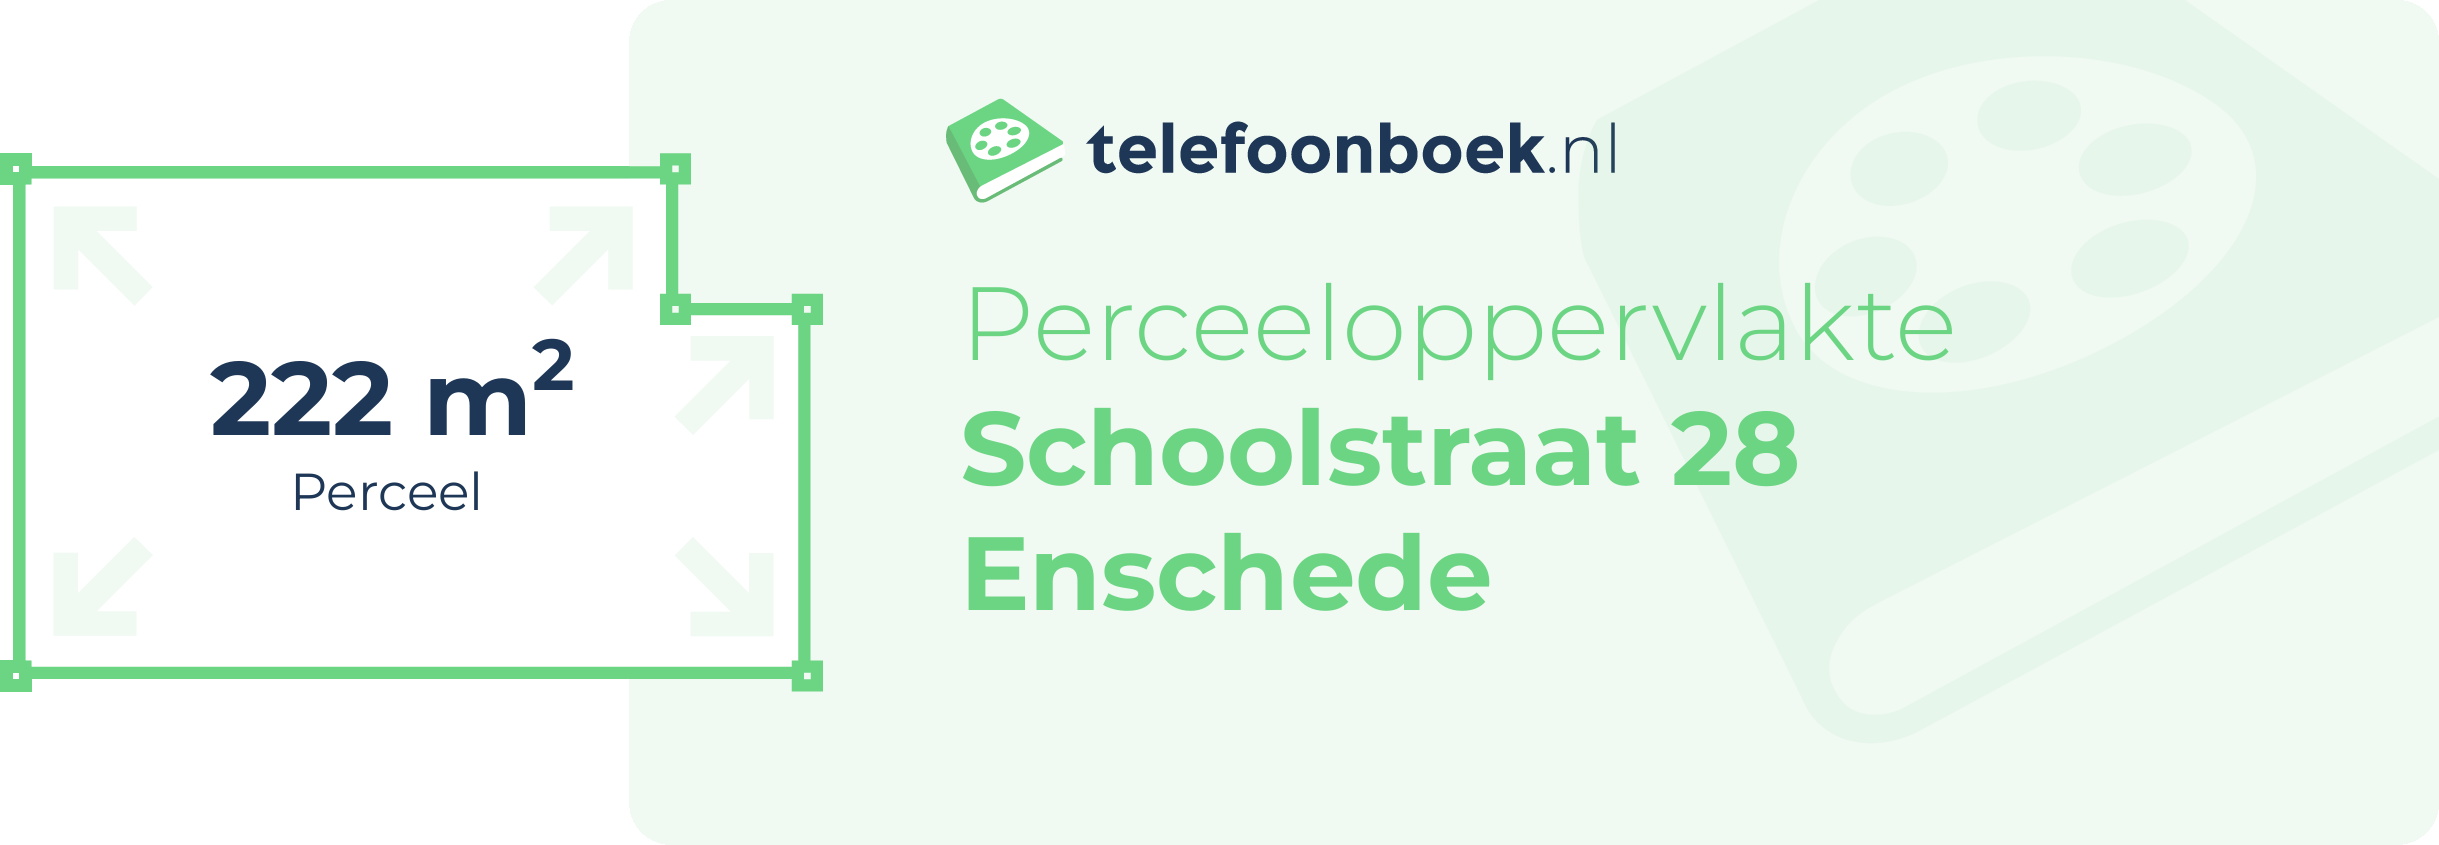 Perceeloppervlakte Schoolstraat 28 Enschede